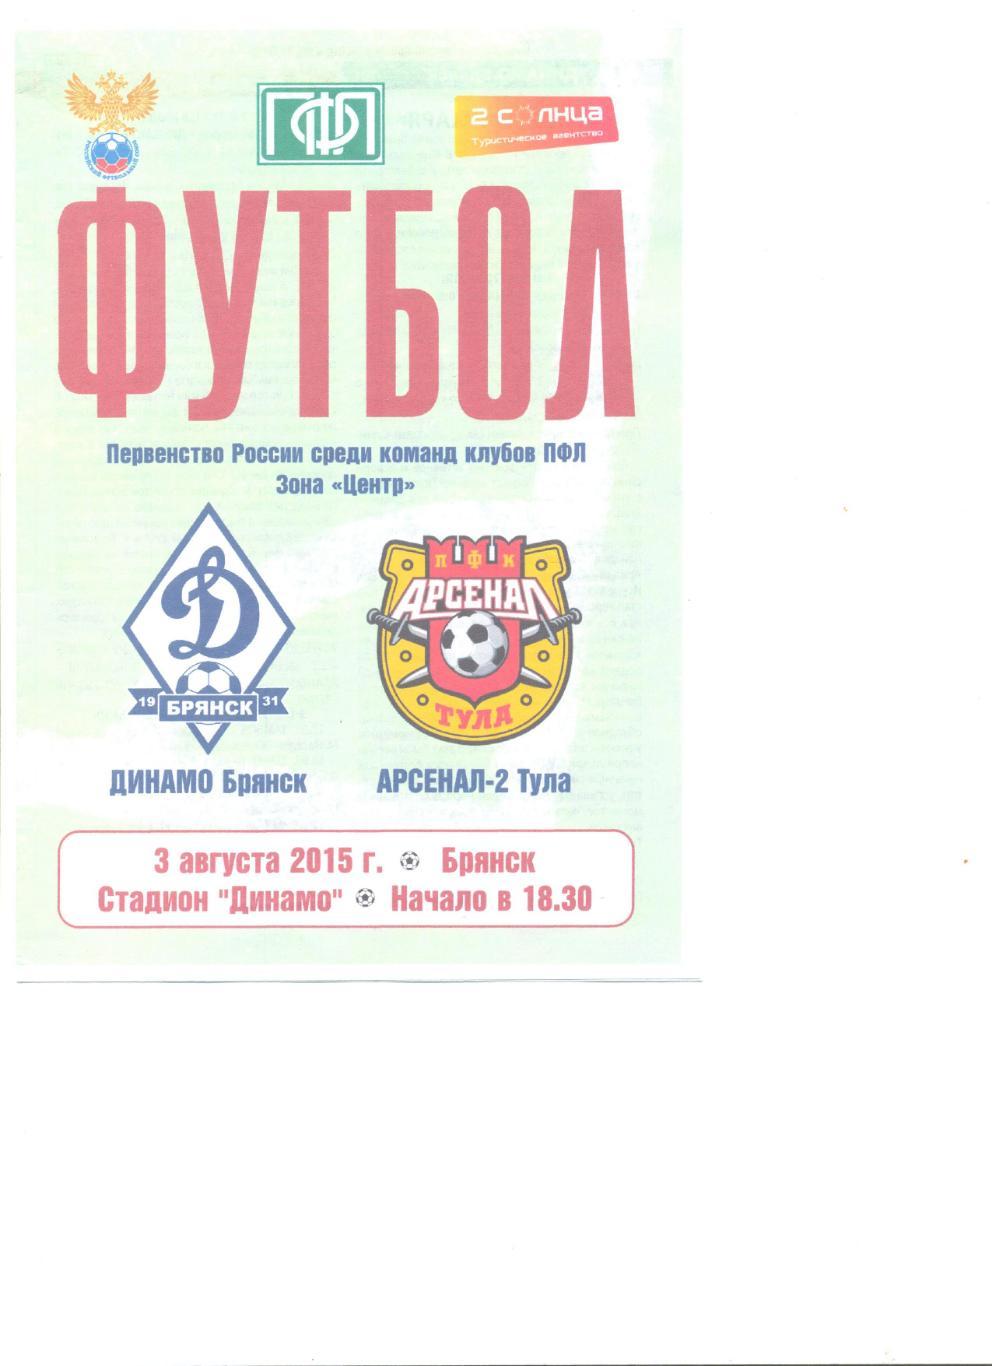 Динамо Брянск - Арсенал-2 Тула 03.08.2015 г.